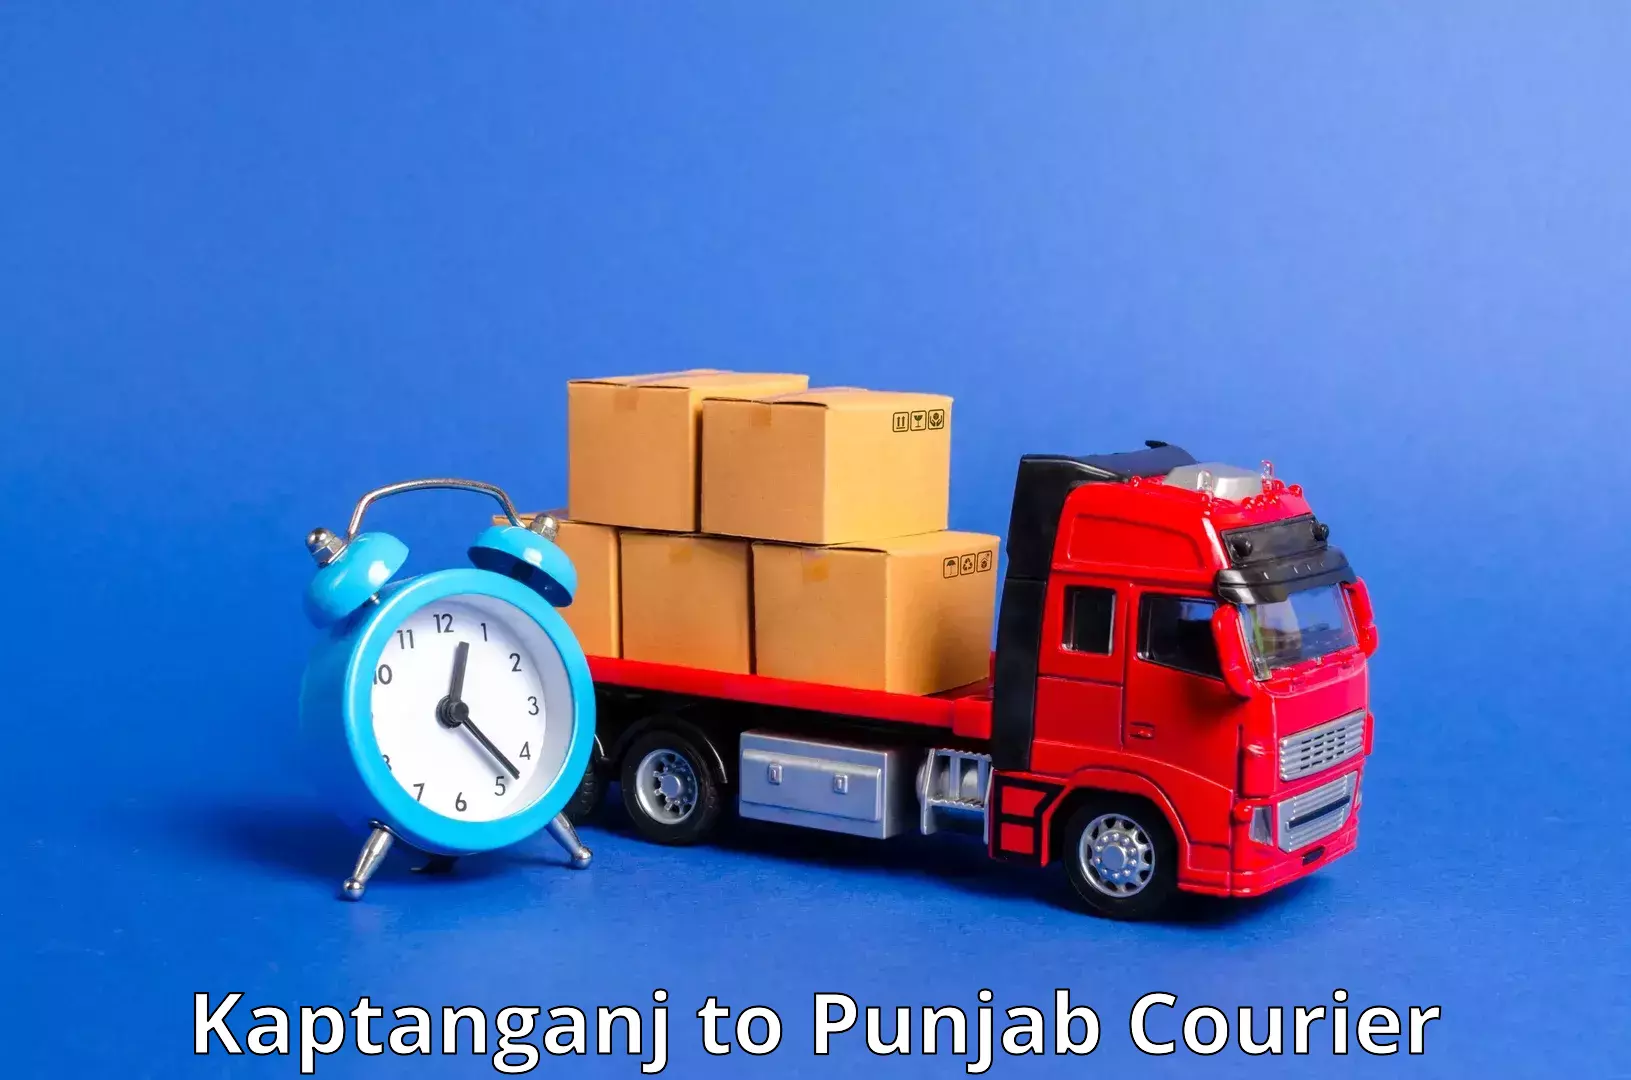 Flexible delivery schedules Kaptanganj to Punjab